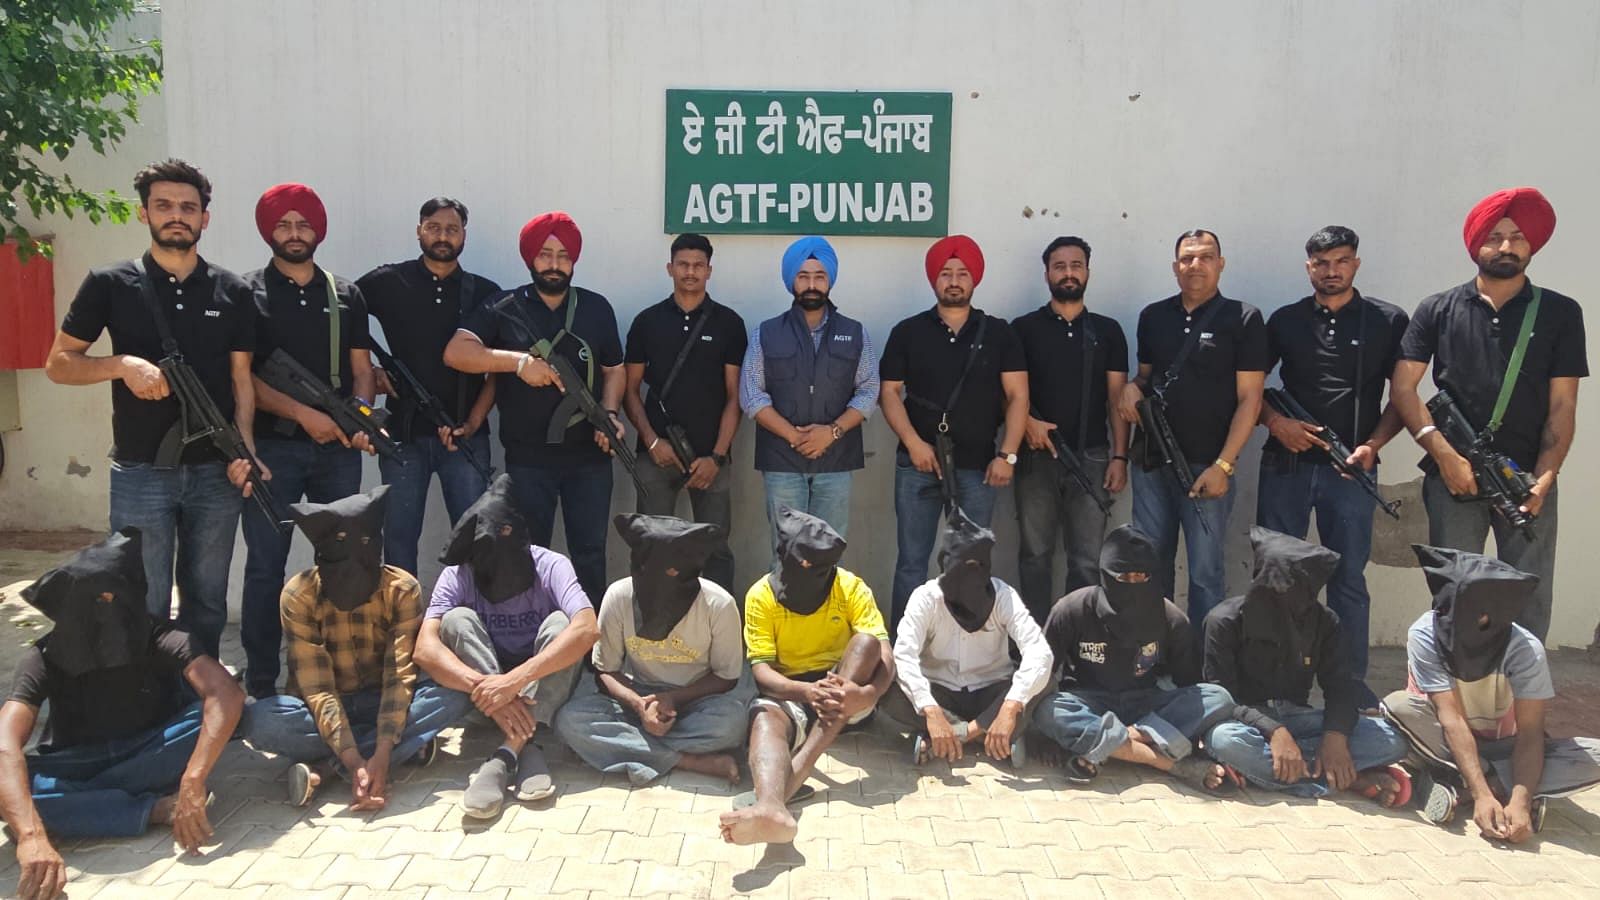 <div class="paragraphs"><p>Punjab cops pose with the arrested criminals.</p></div>